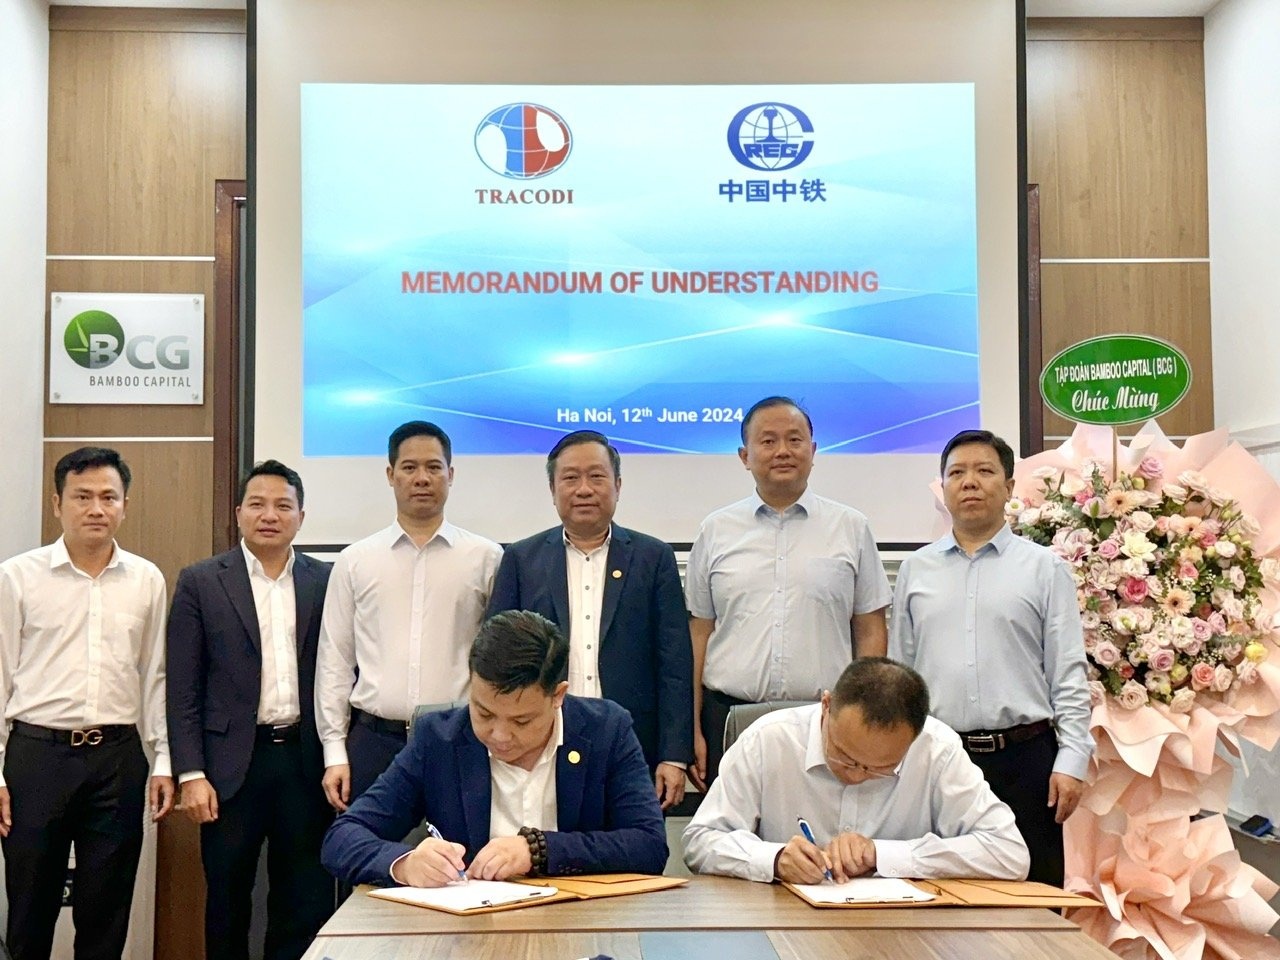 racodi ký kết cùng Tập đoàn Đường sắt Quốc tế Trung Quốc nhằm đầu tư và phát triển các dự án hạ tầng giao thông, phát triển hạ tầng khu công nghiệp và nhà ở xã hội tại Việt Nam